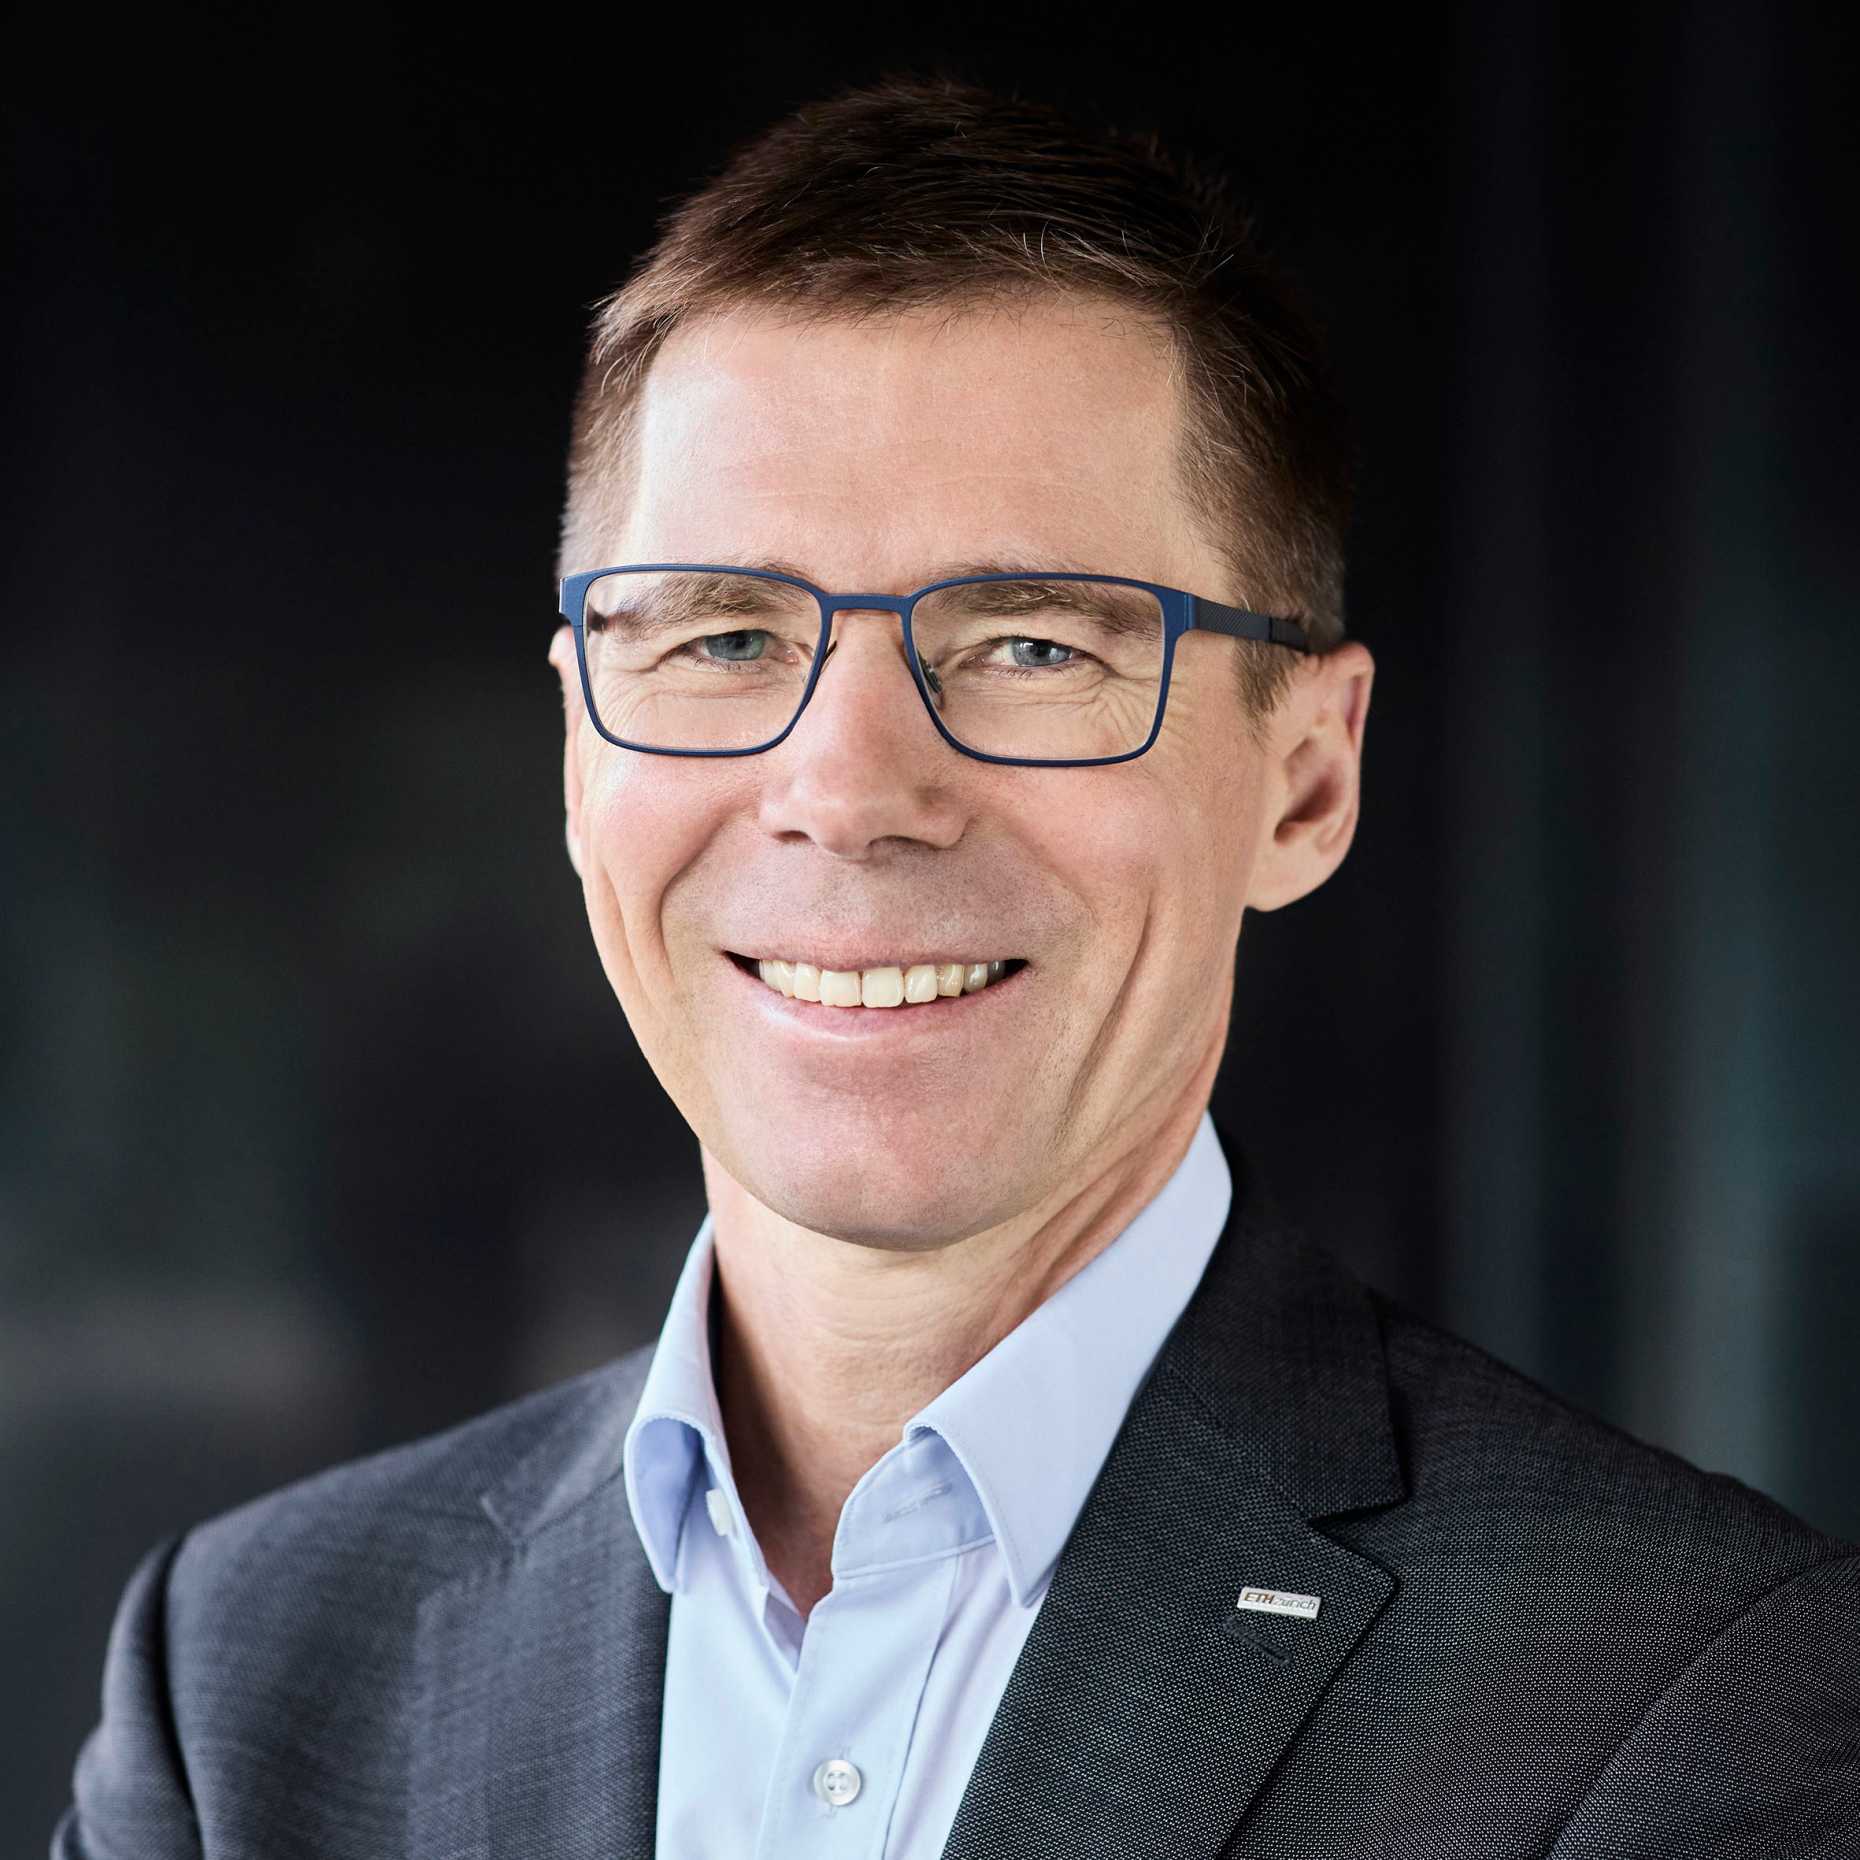 Prof. Dr. Joël Mesot, ETH Zurich President